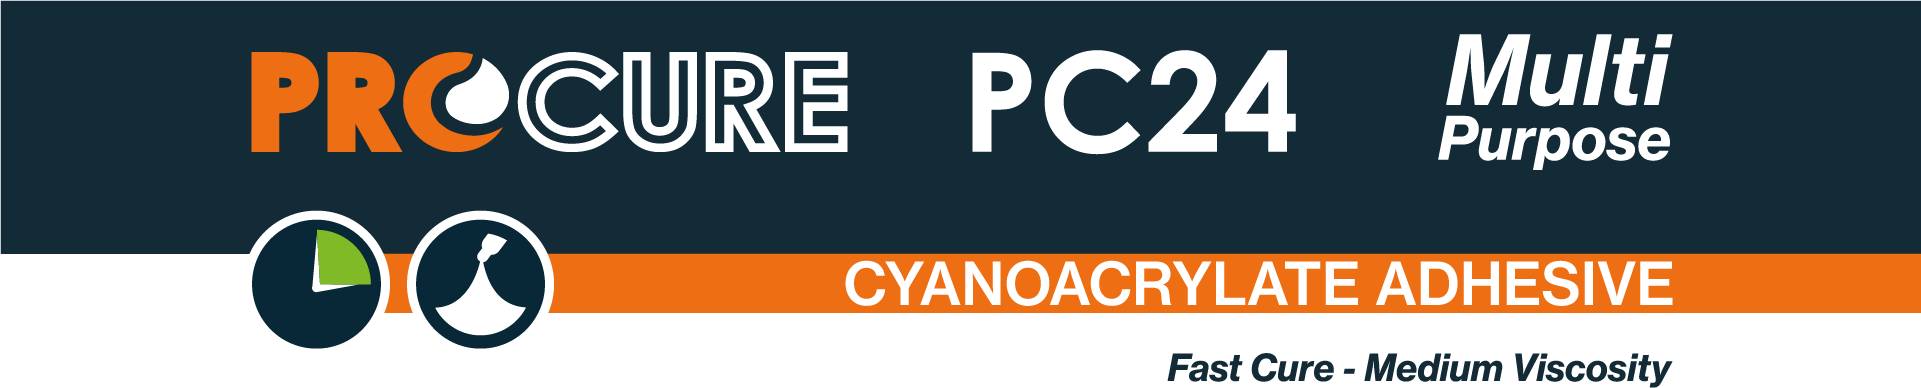 Procure PC24 Multi Purpose Cyanoacrylate Adhesive.